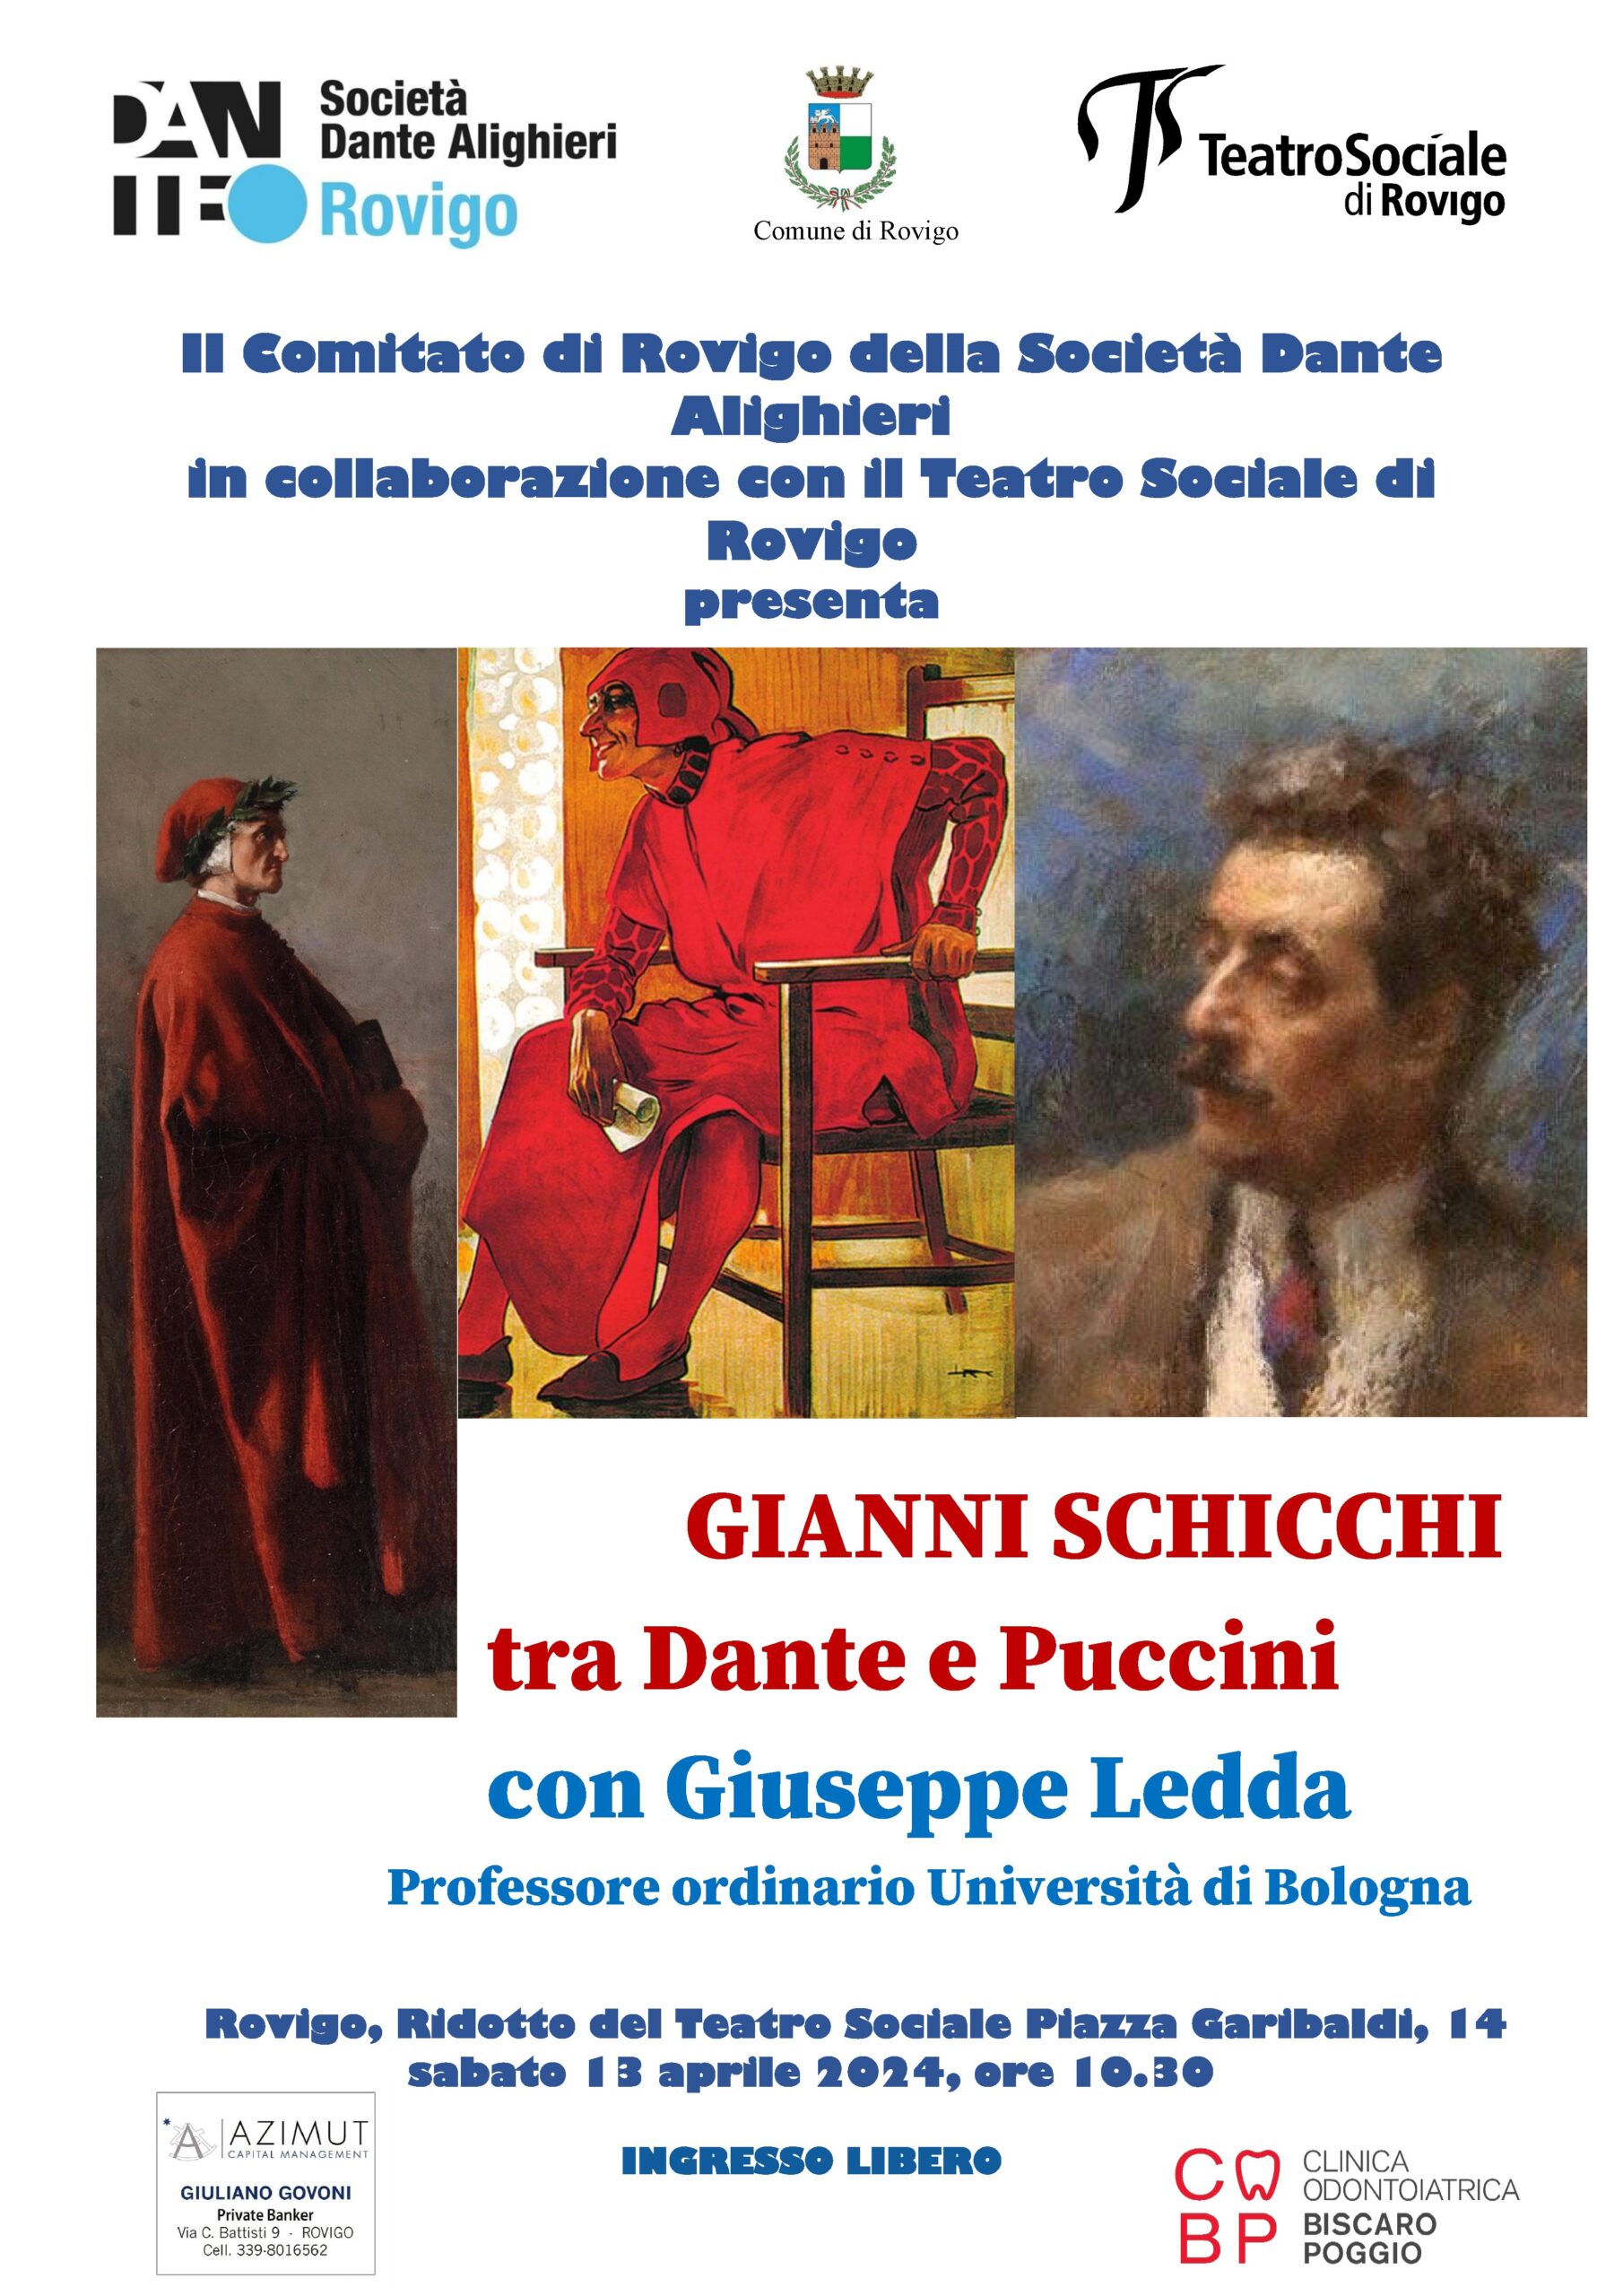 La Dante Rovigo, in collaborazione con il Teatro Sociale, presenta: “Gianni Schicchi tra Dante e Puccini”   